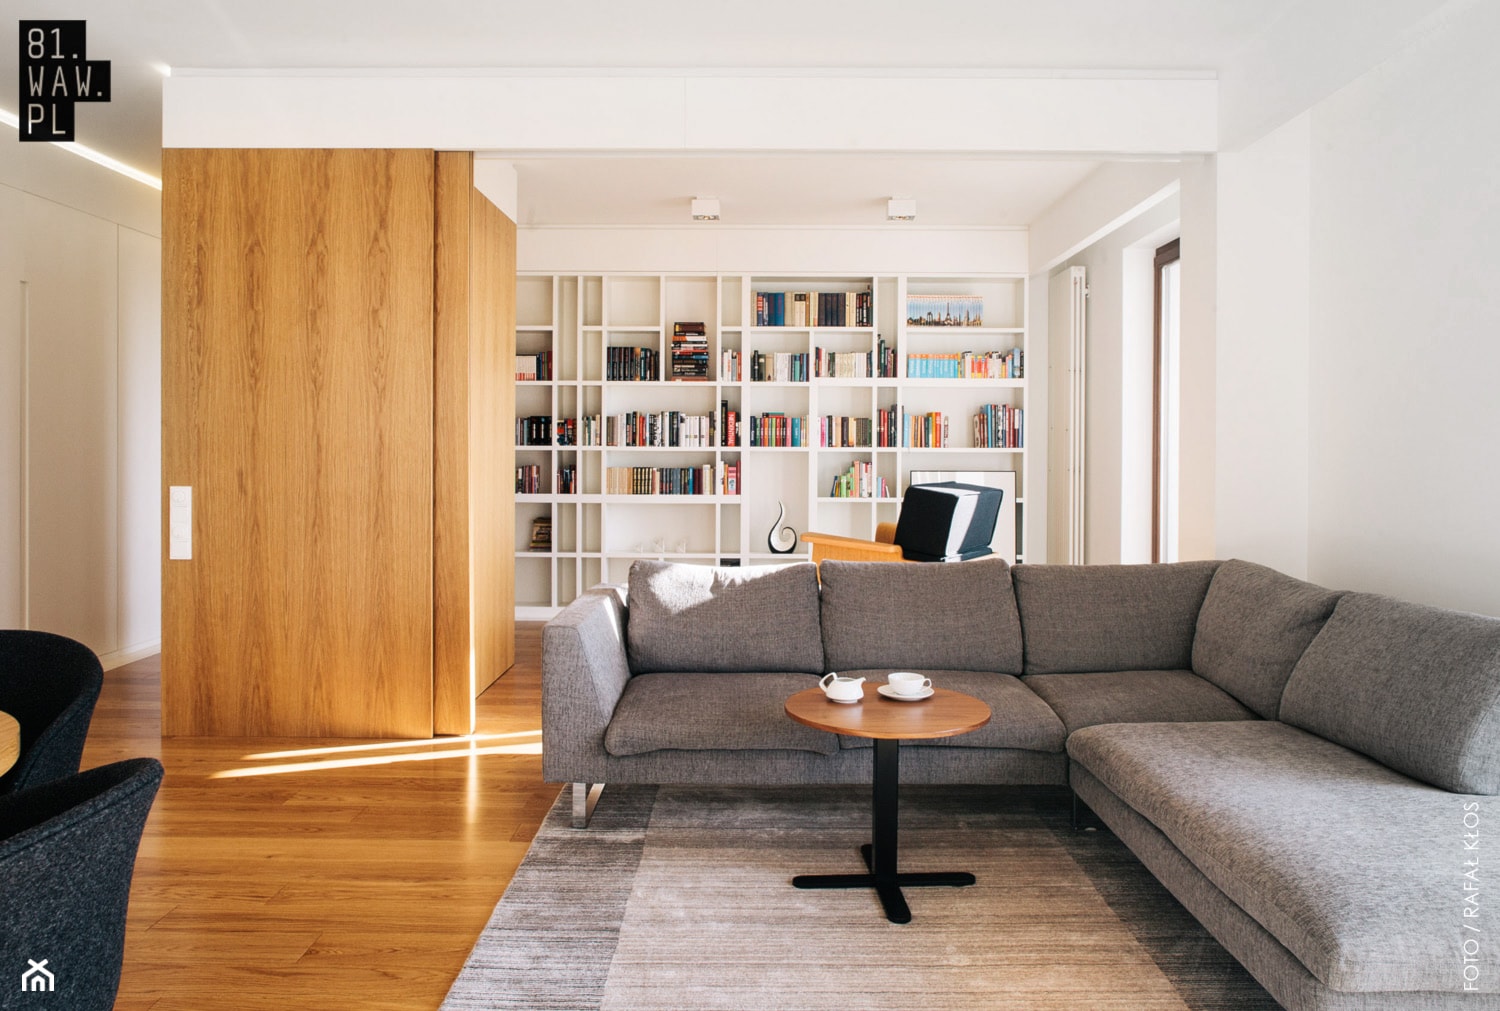 Mieszkanie z "ukrytym' gabinetem - Mały biały salon, styl minimalistyczny - zdjęcie od 81.WAW.PL - Homebook